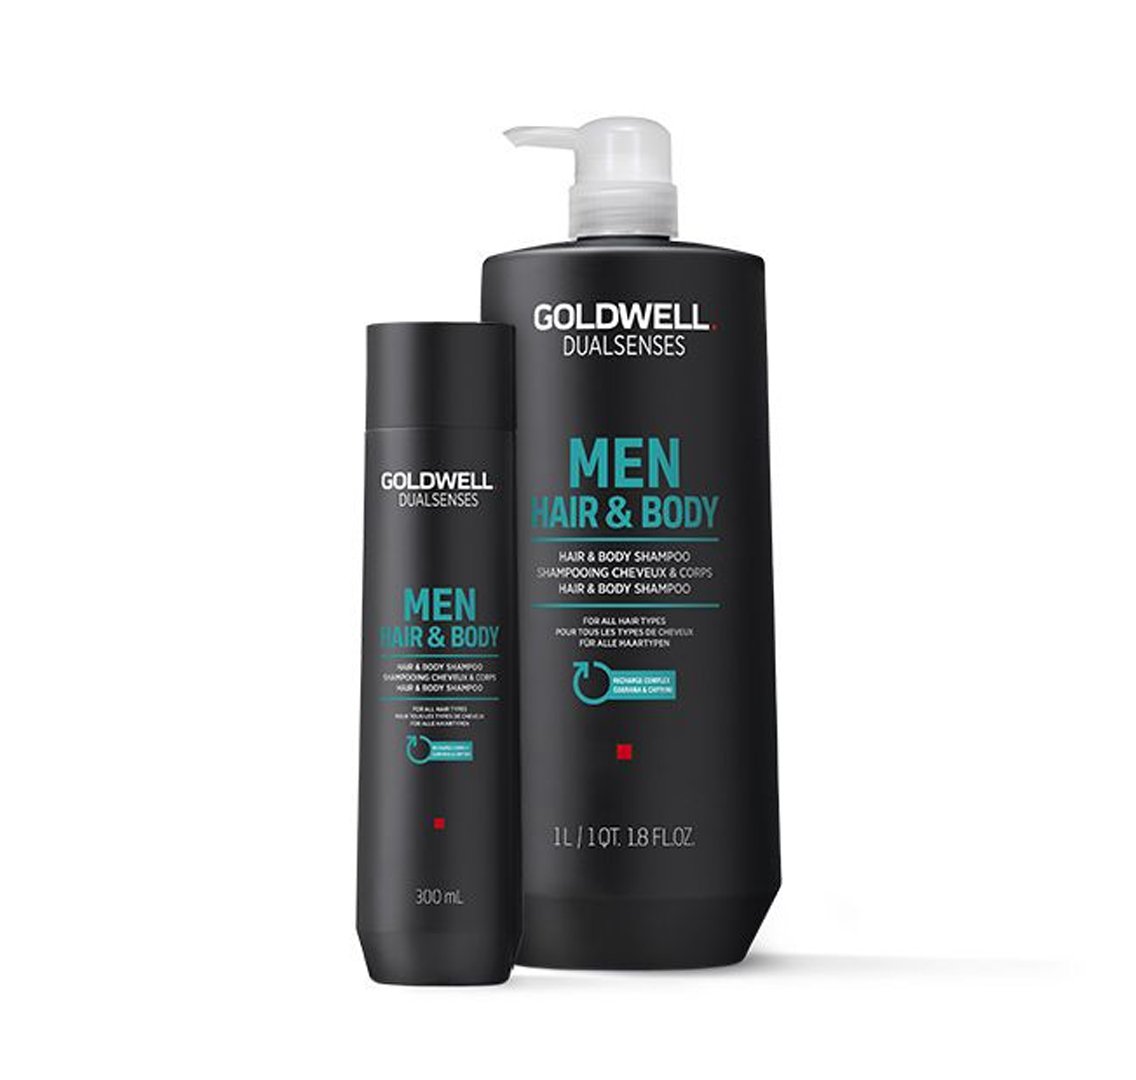 Goldwell. Dual Senses Men Shampoing Cheveux et Corps - 300 ml - Concept C. Shop